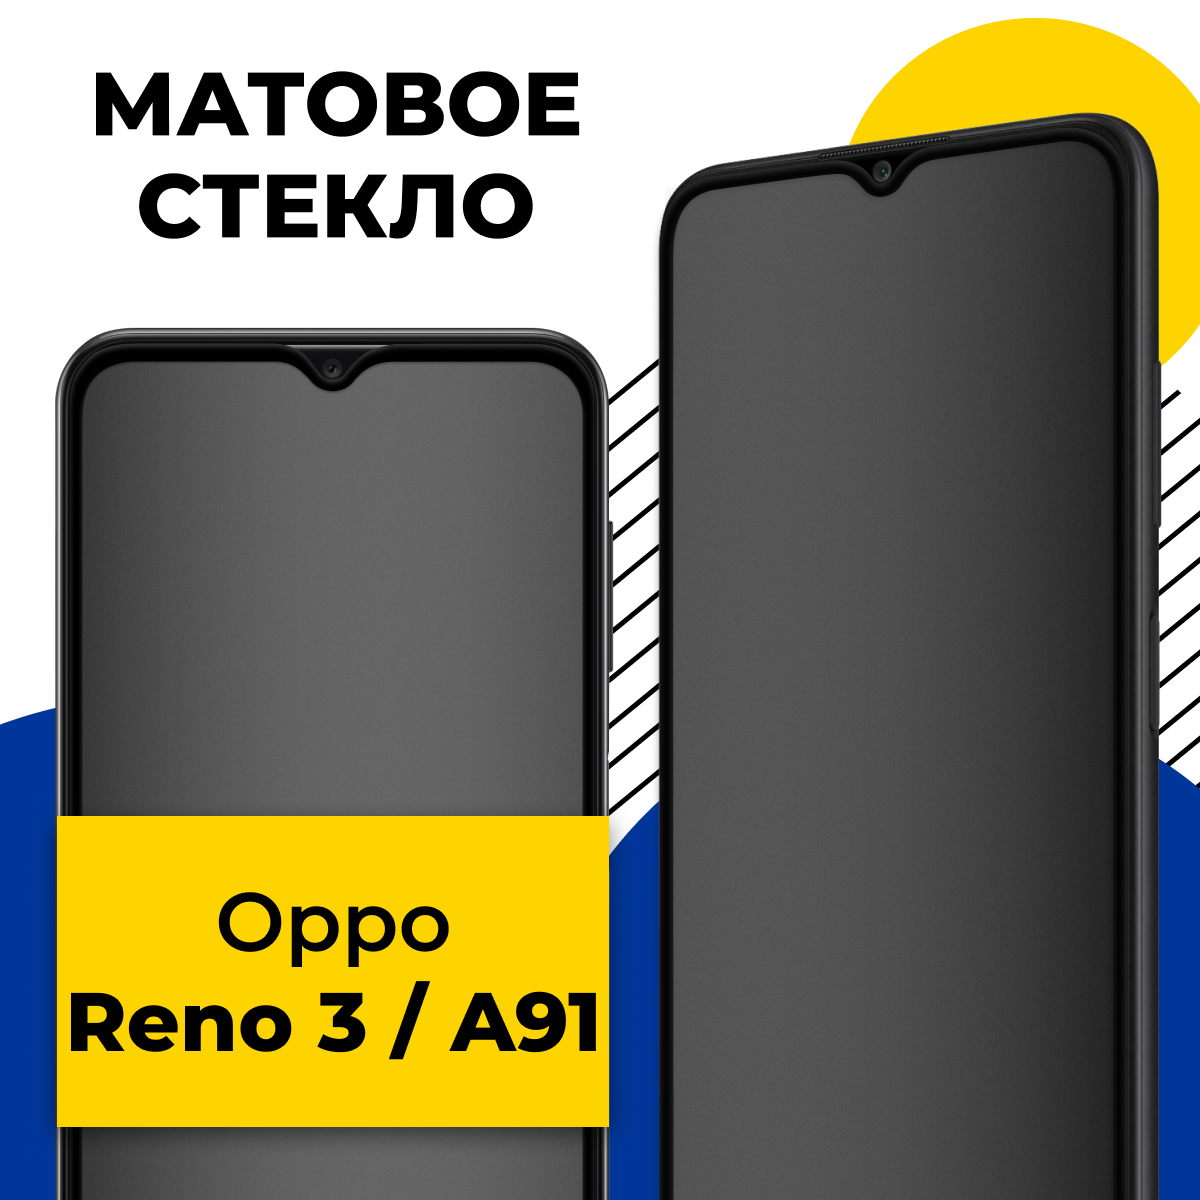 Матовое защитное стекло для телефона Oppo Reno 3 и A91 / Противоударное закаленное стекло 2.5D на смартфон Оппо Рено 3 и А91 с олеофобным покрытием